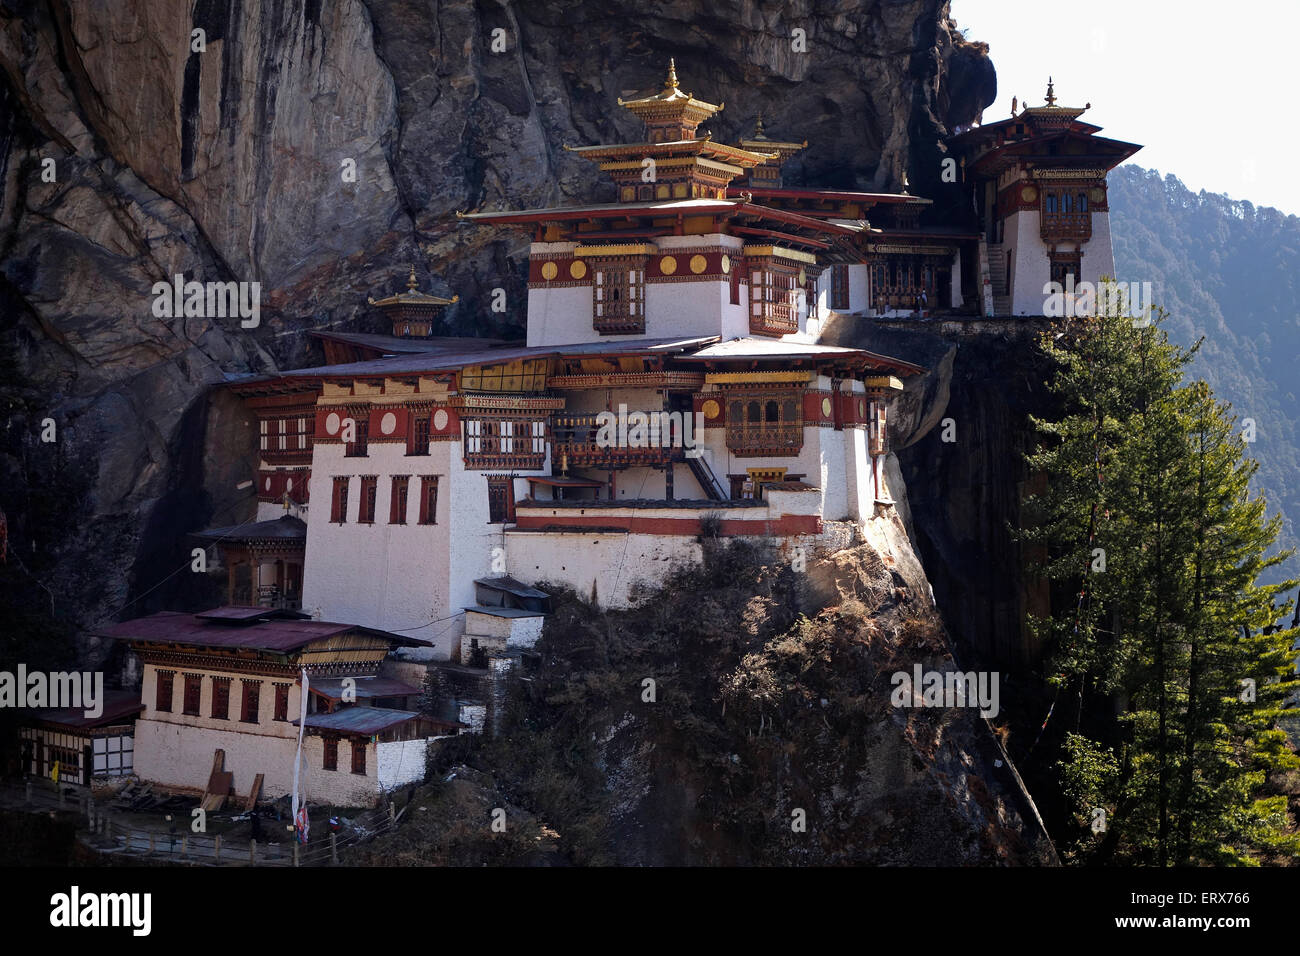 Vue sur Paro Taktsang également connu sous le nom de monastère Taktsang Palphug et le Tigren's Nest) un site sacré himalayan et complexe de temple situé dans la falaise de la vallée supérieure de Paro au Bhoutan. Banque D'Images